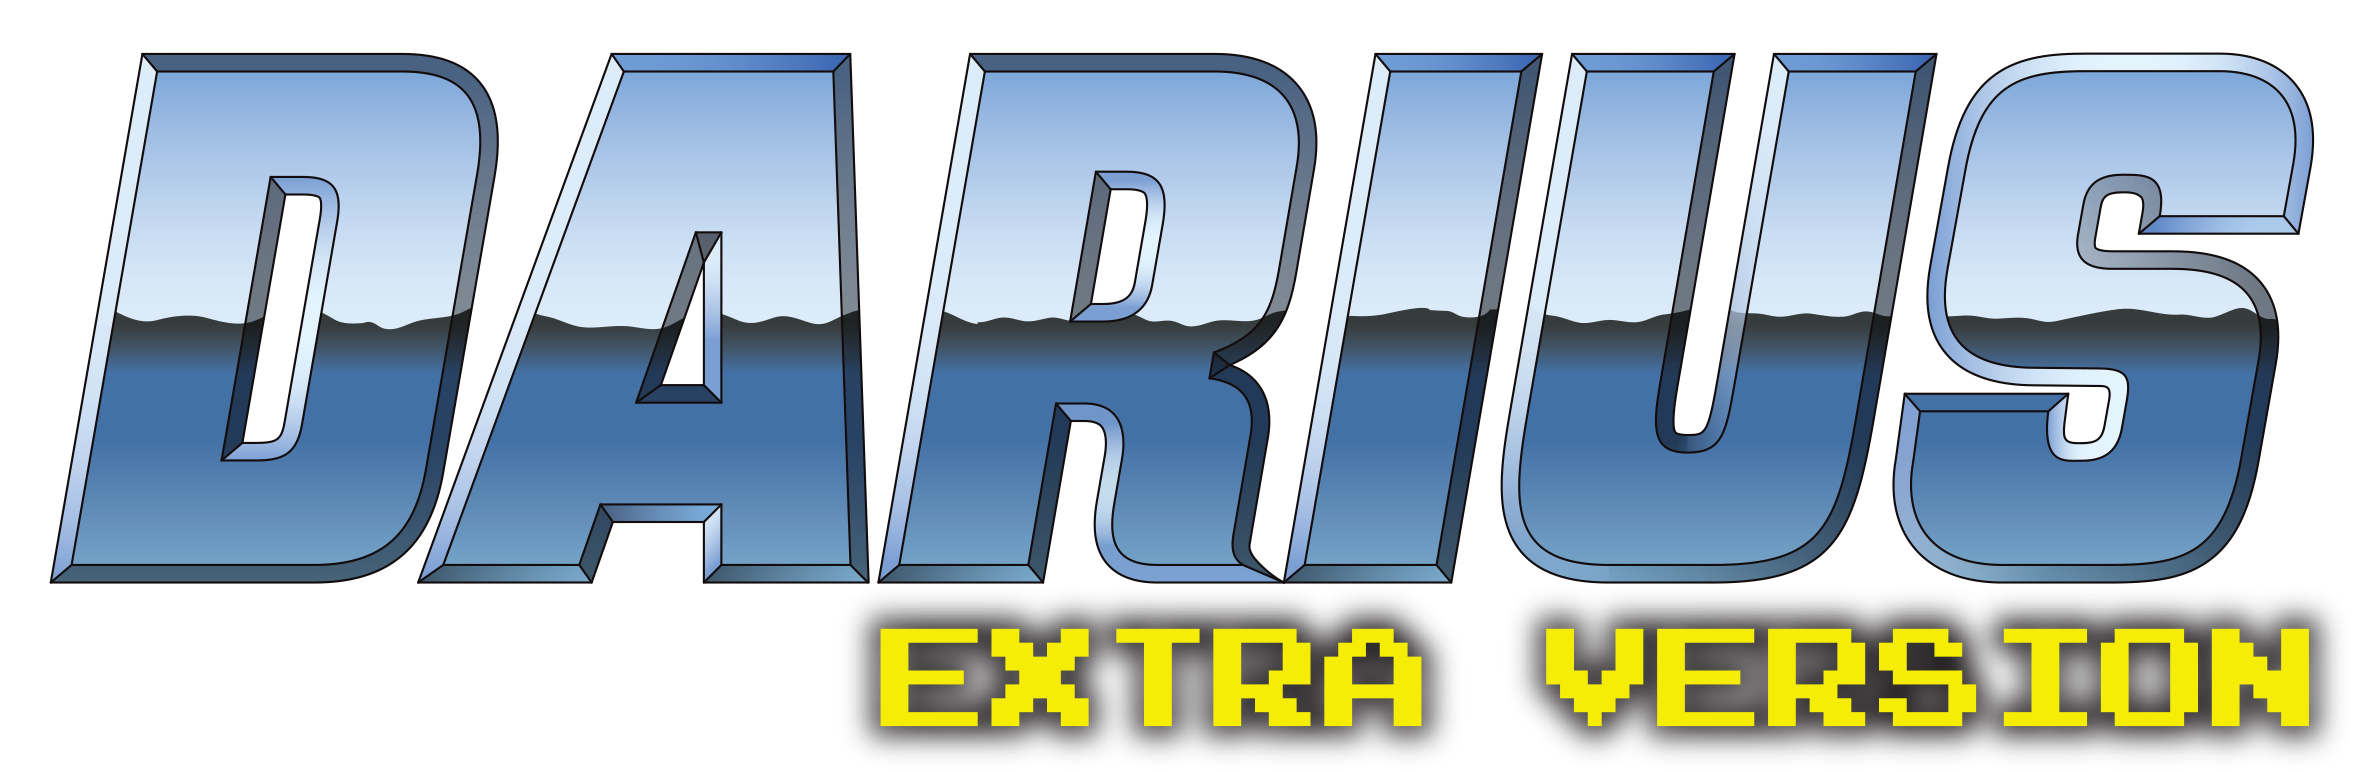 Darius Extra Version